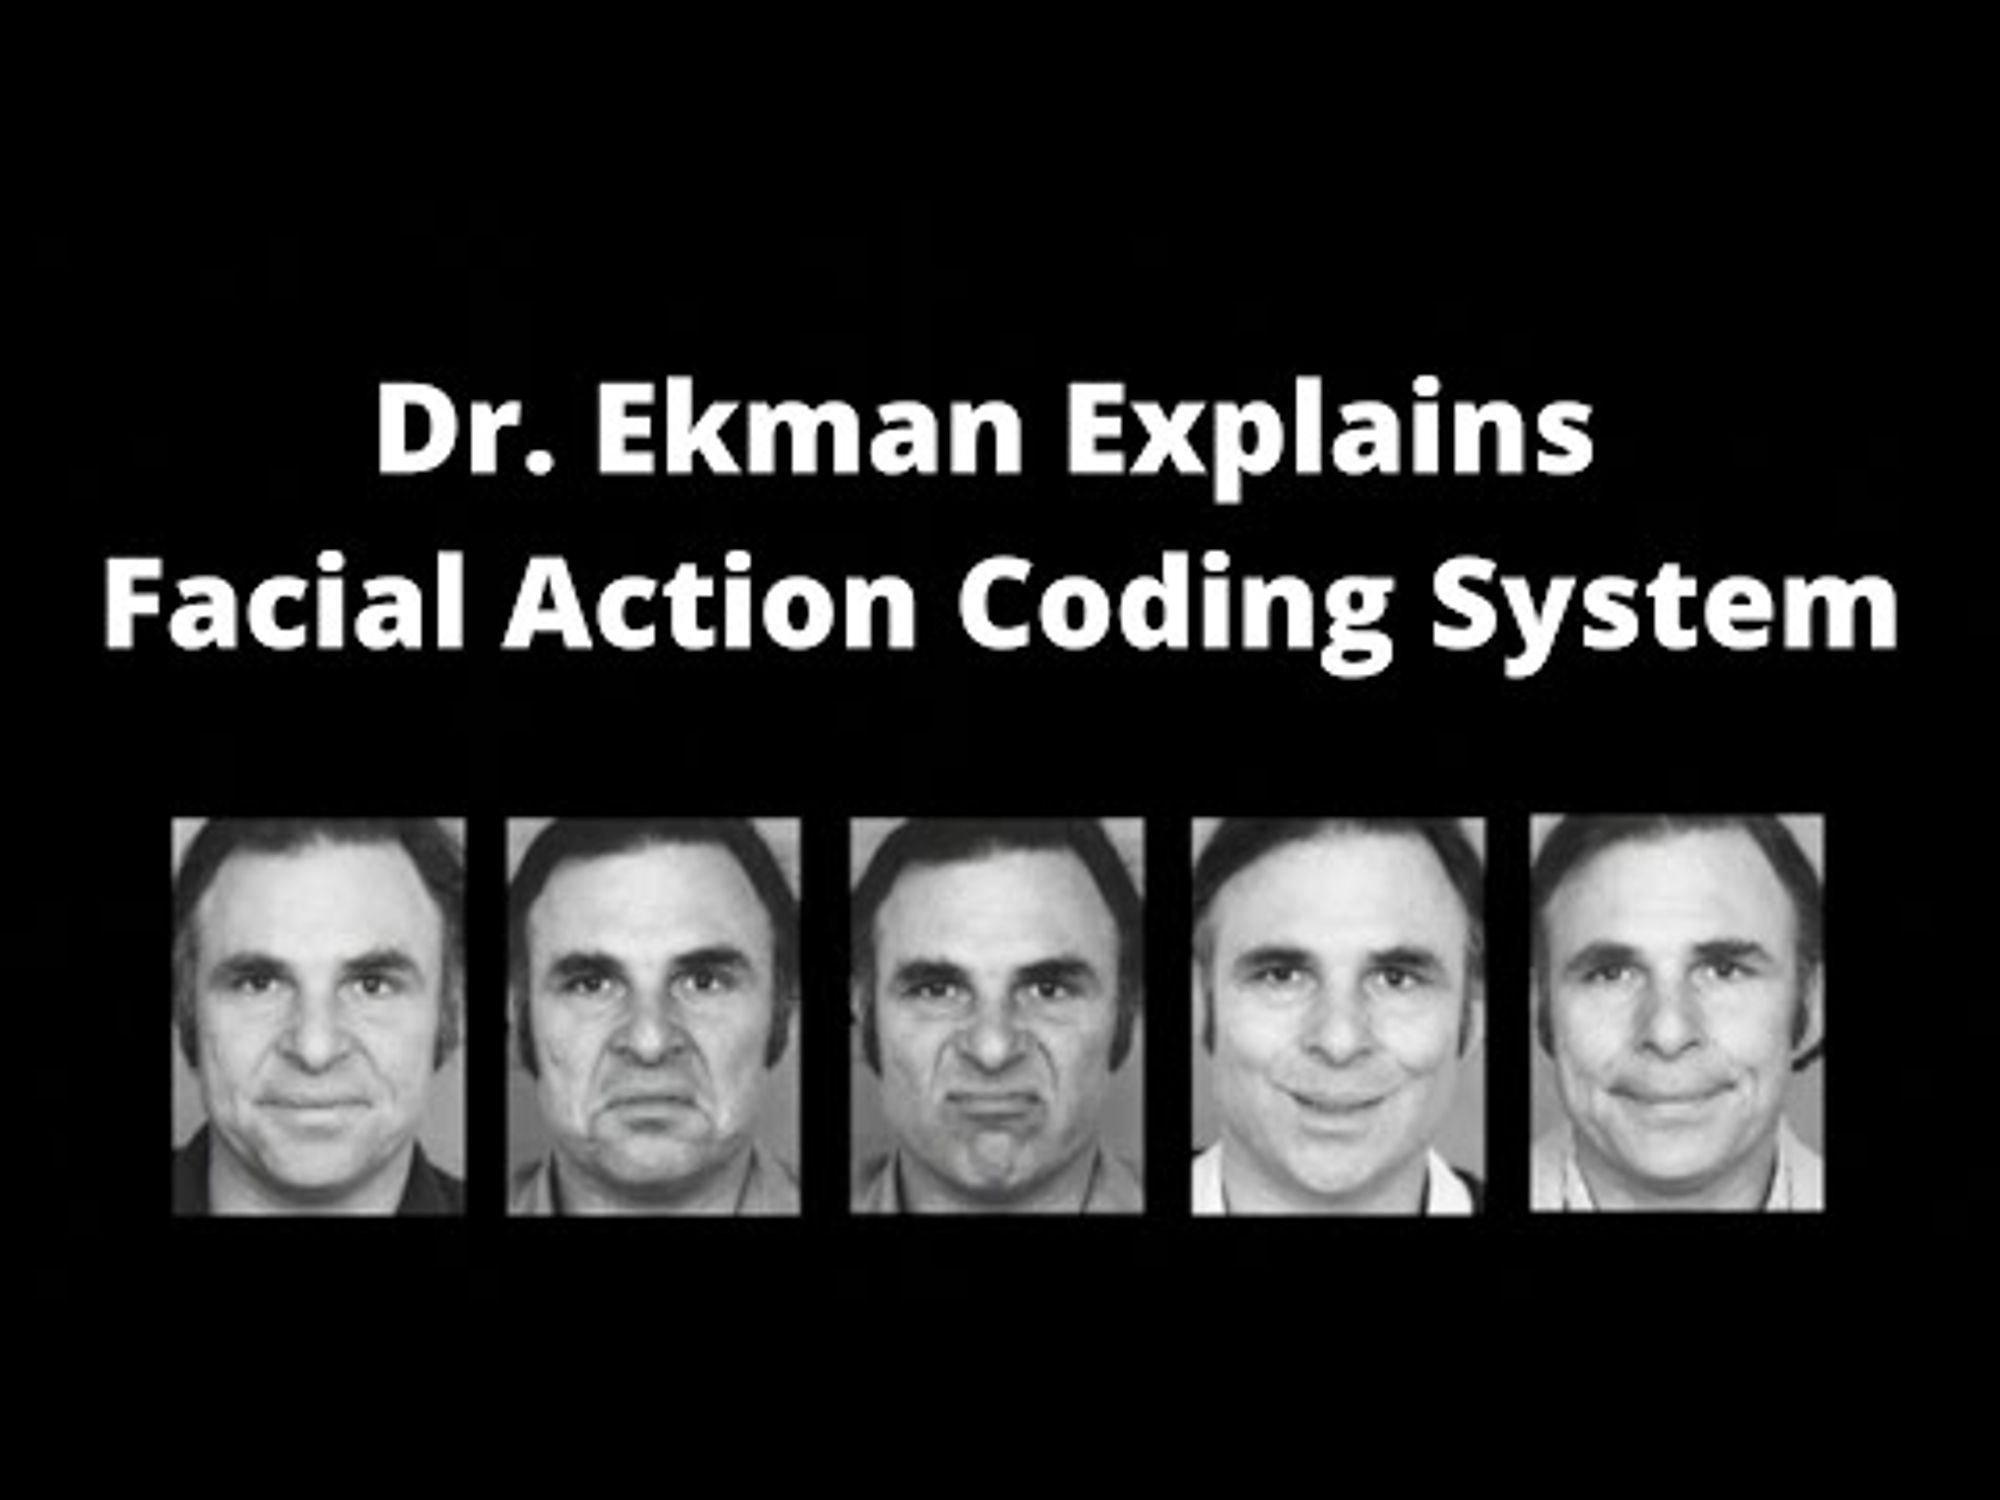 Dr. Ekman Explains Facial Action Coding System (FACS)